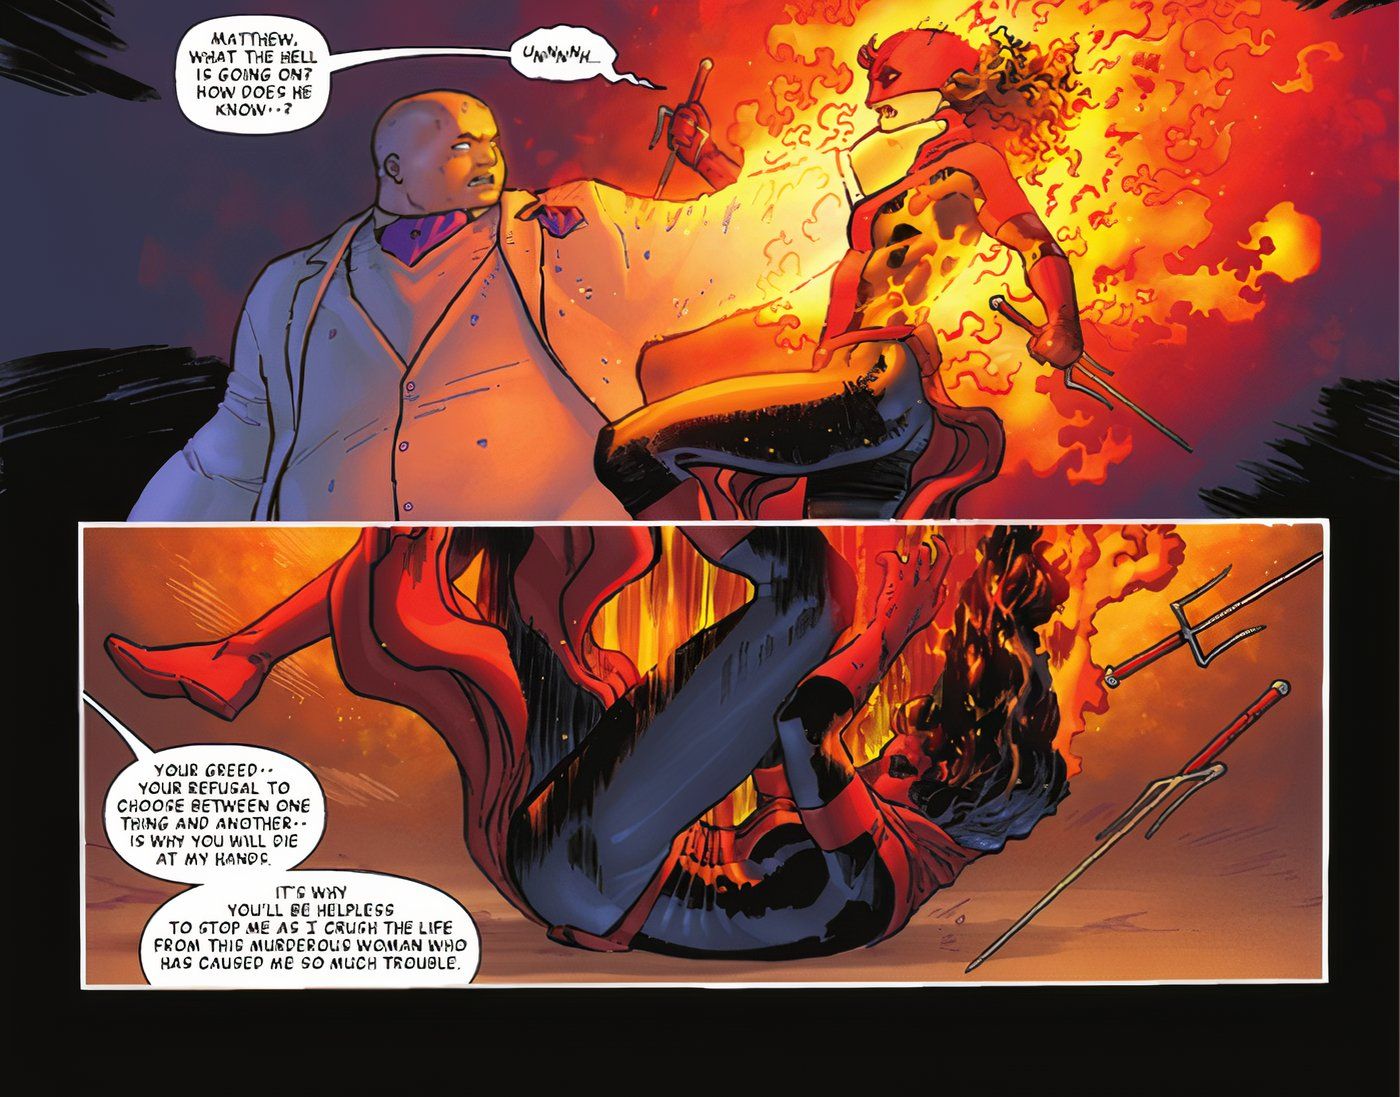 O Rei do Crime da Marvel Comics queima Elektra com fogo do inferno, derrotando-a instantaneamente.